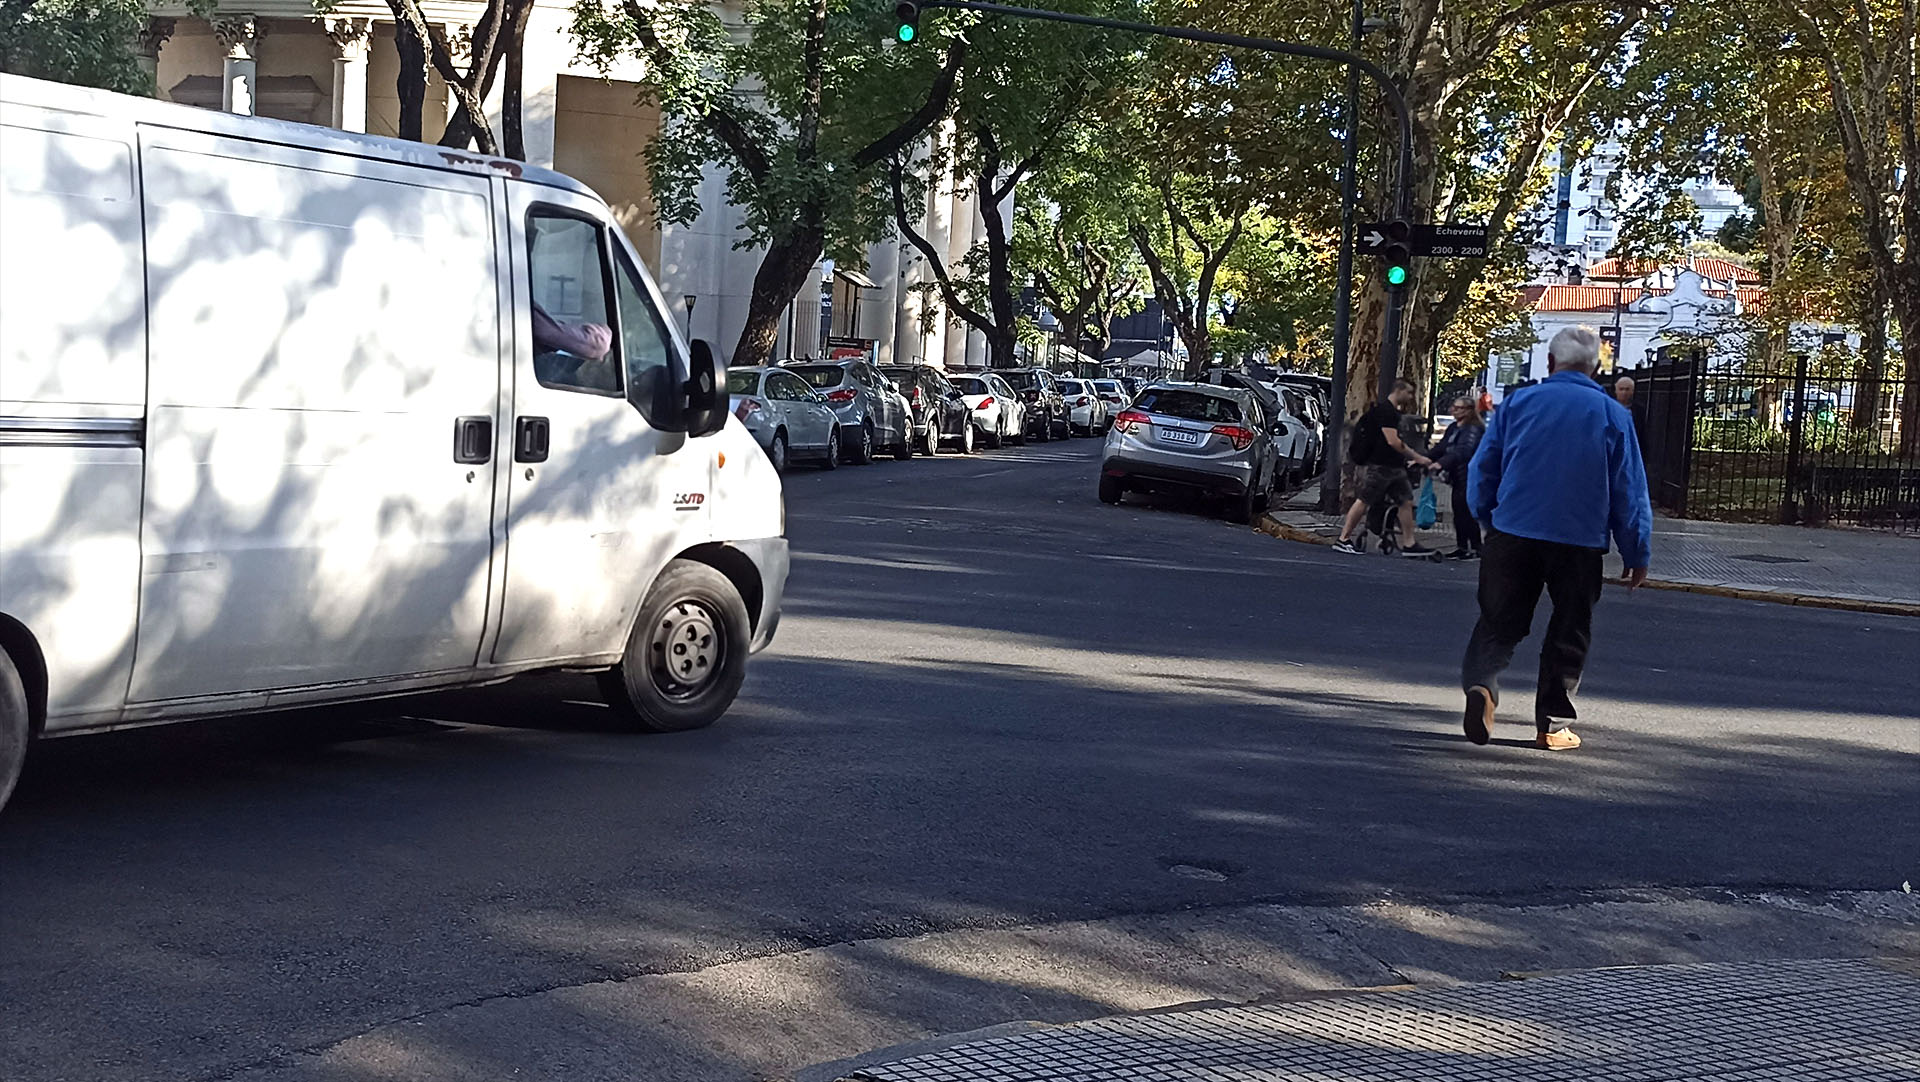 El comportamiento social también debe adaptarse a la mayor cantidad de vehículos que circulan en las ciudades. La lucha entre peatones y automovilistas no contribuye a evitar situaciones de conflicto